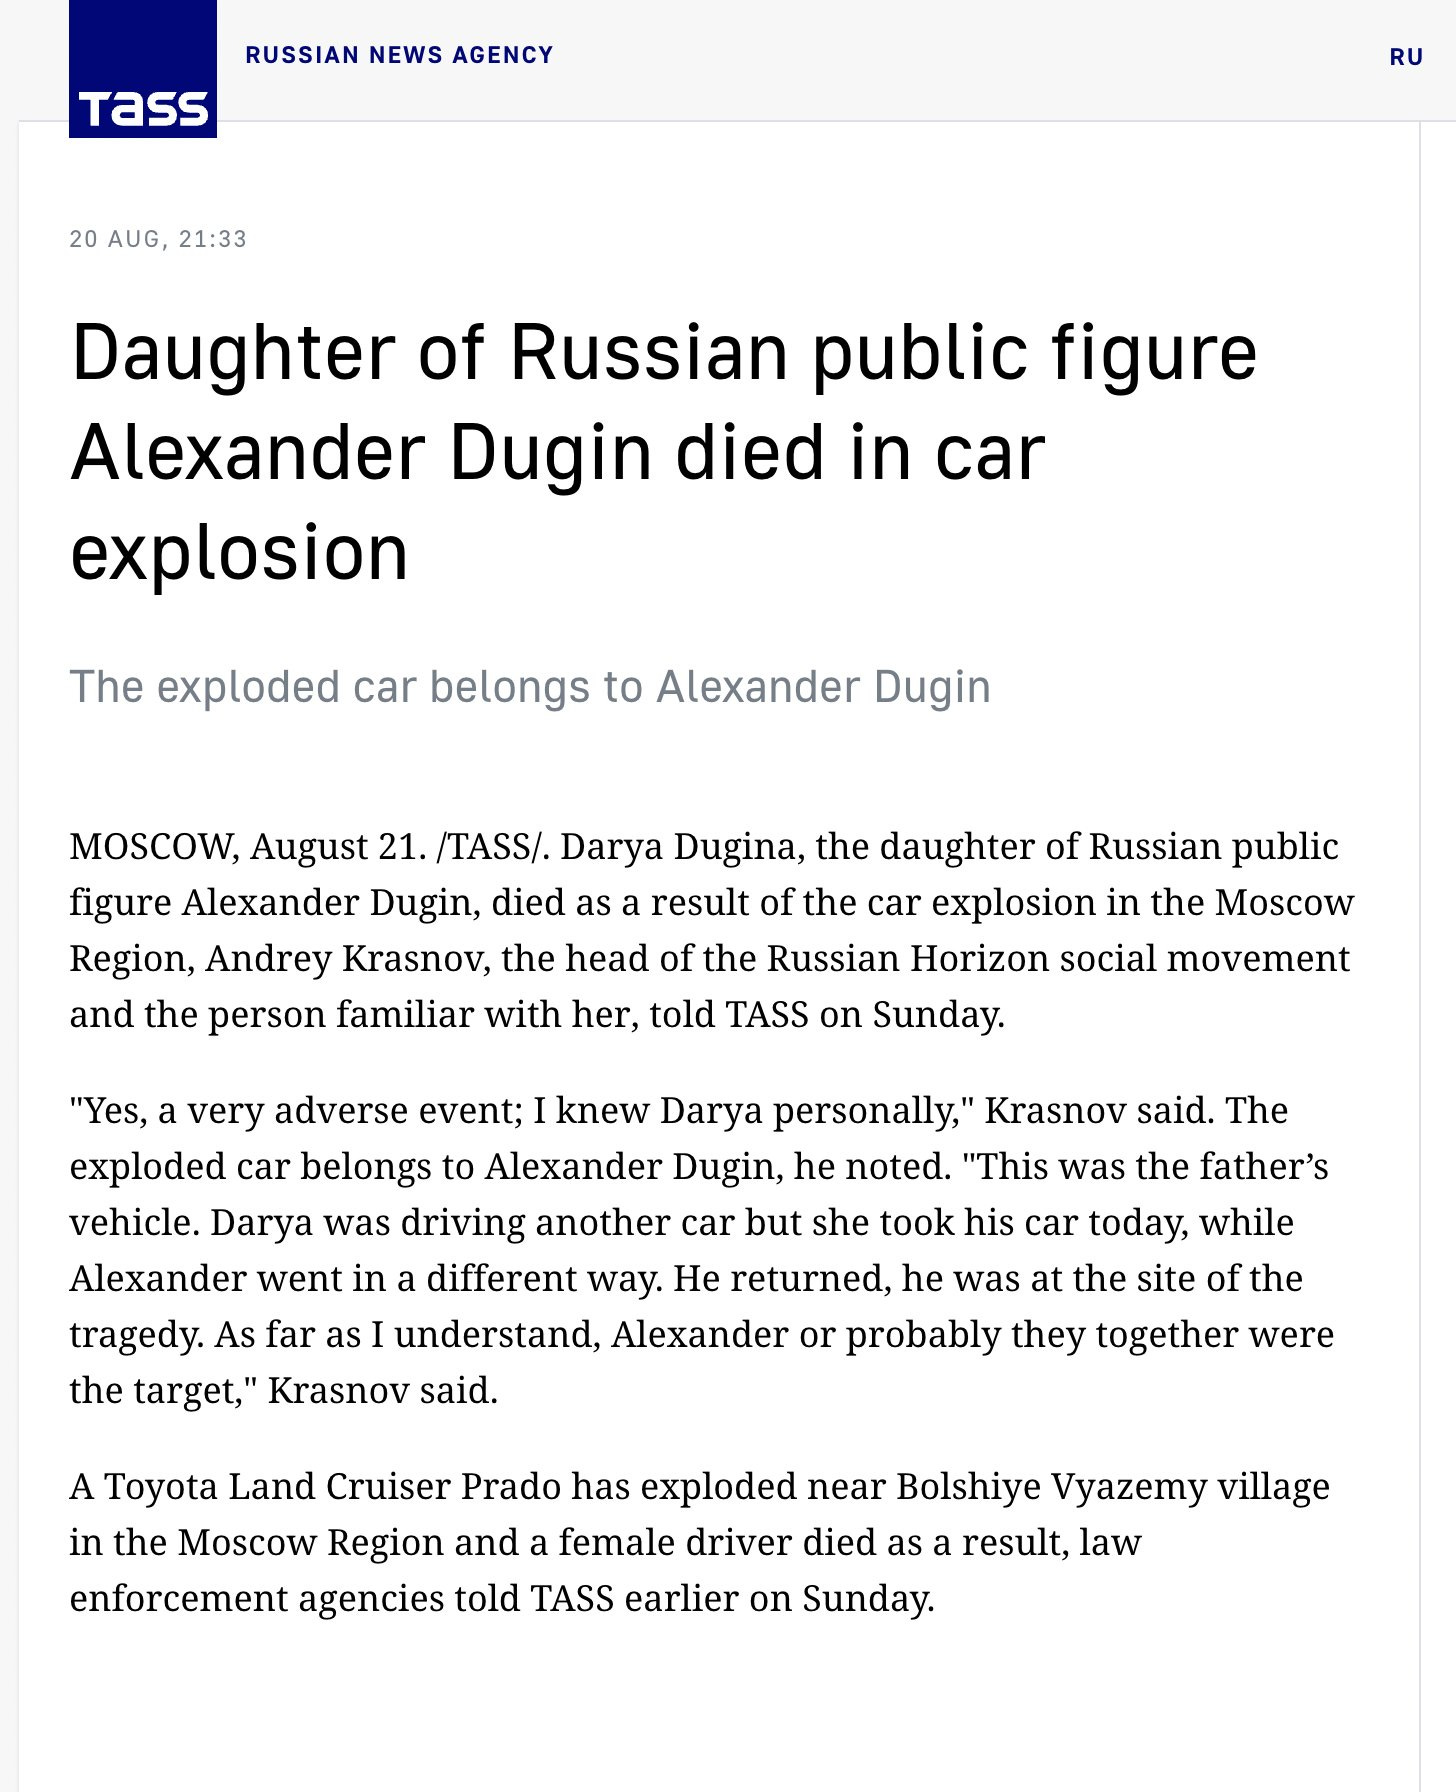 TASS News statement on Dugina's death